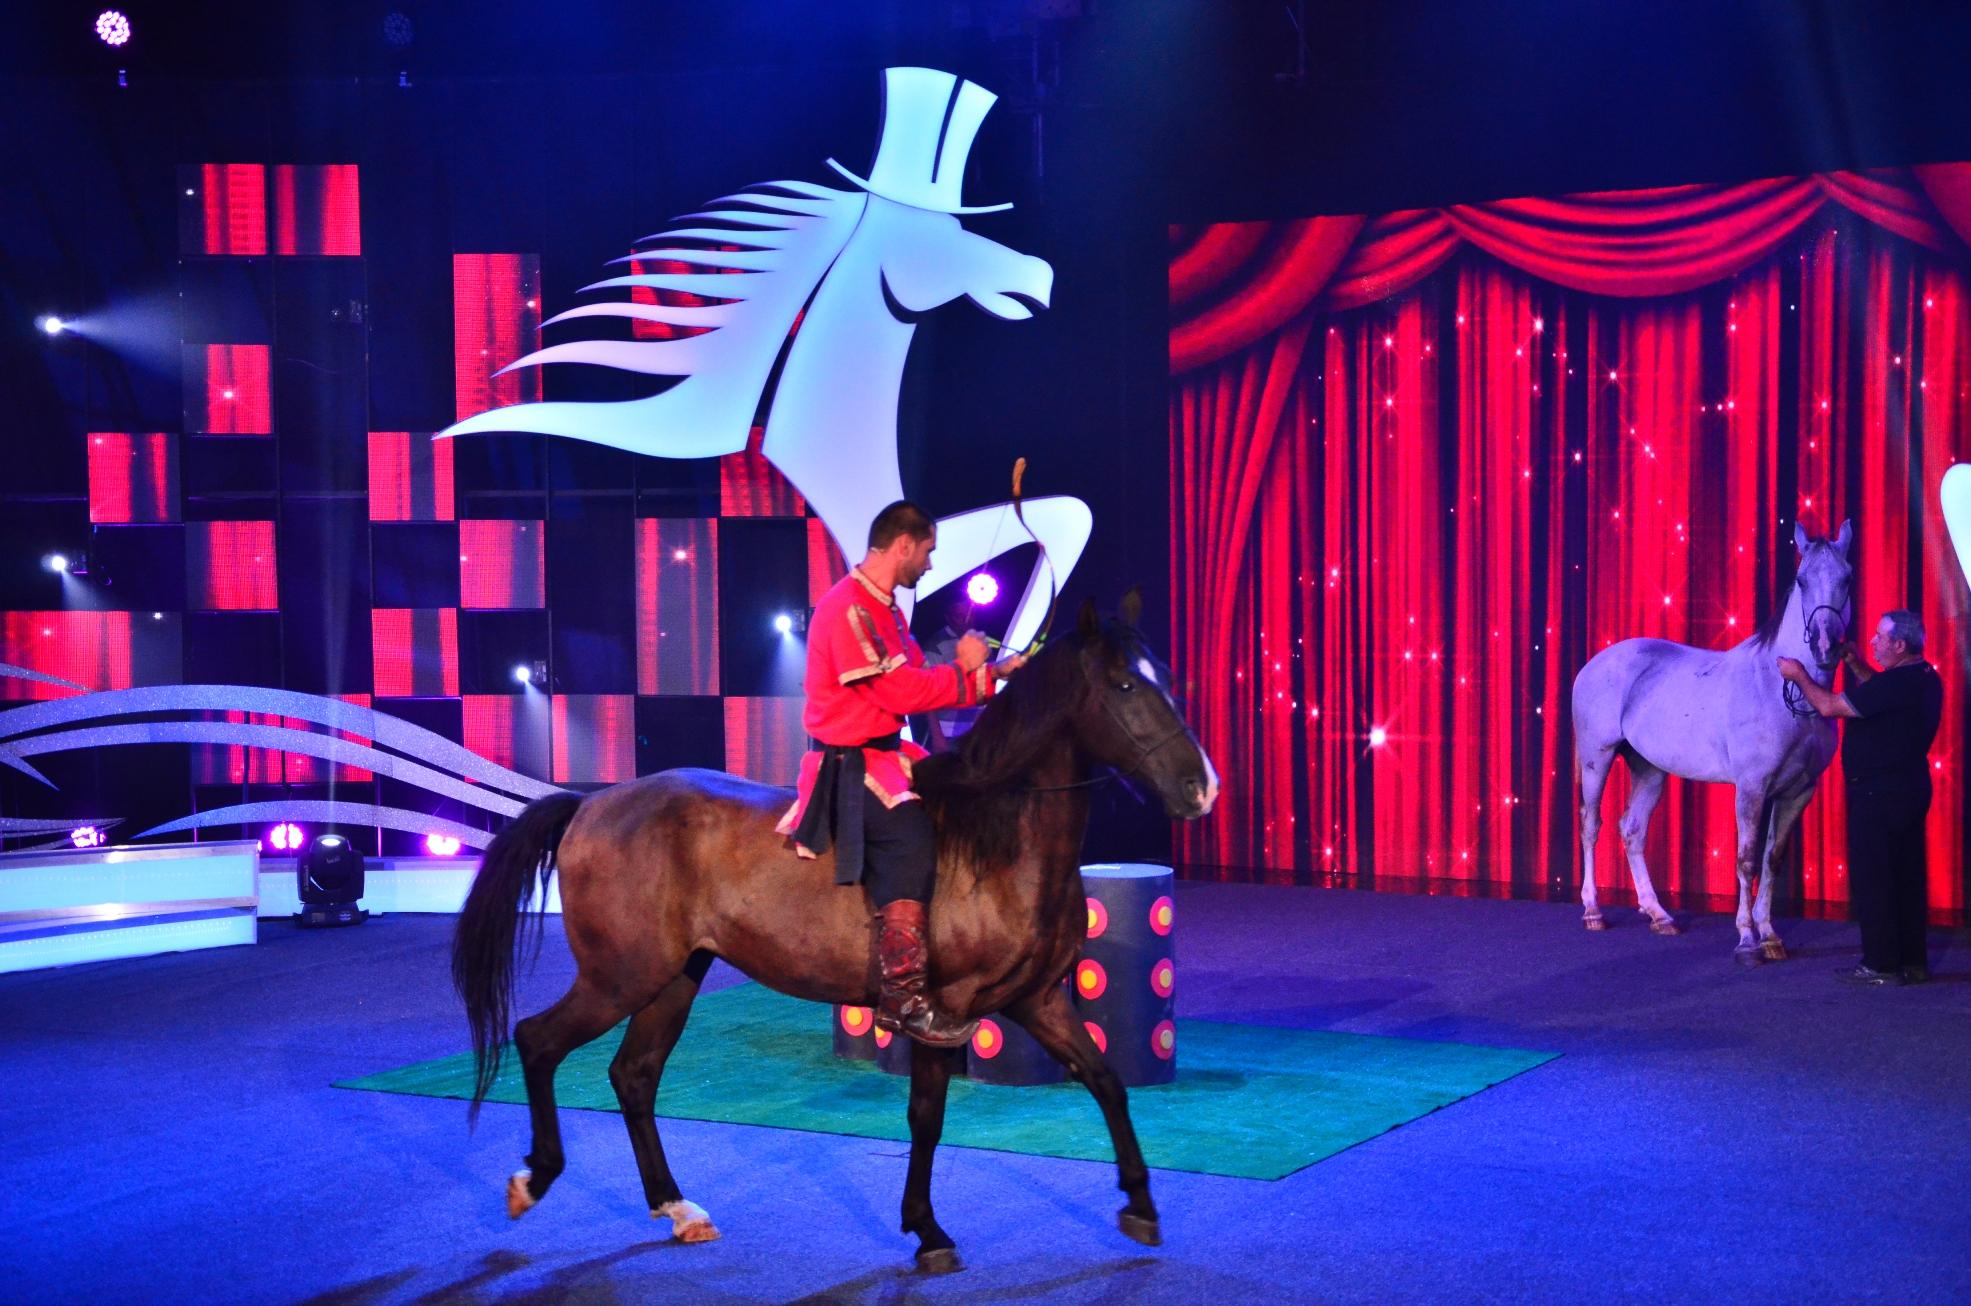 Spectacol TOTAL la „Ham talent”! Namere și Vackor, doi cai din rasa Lipițan, au arătat că sunt făcuți pentru a fi vedete!